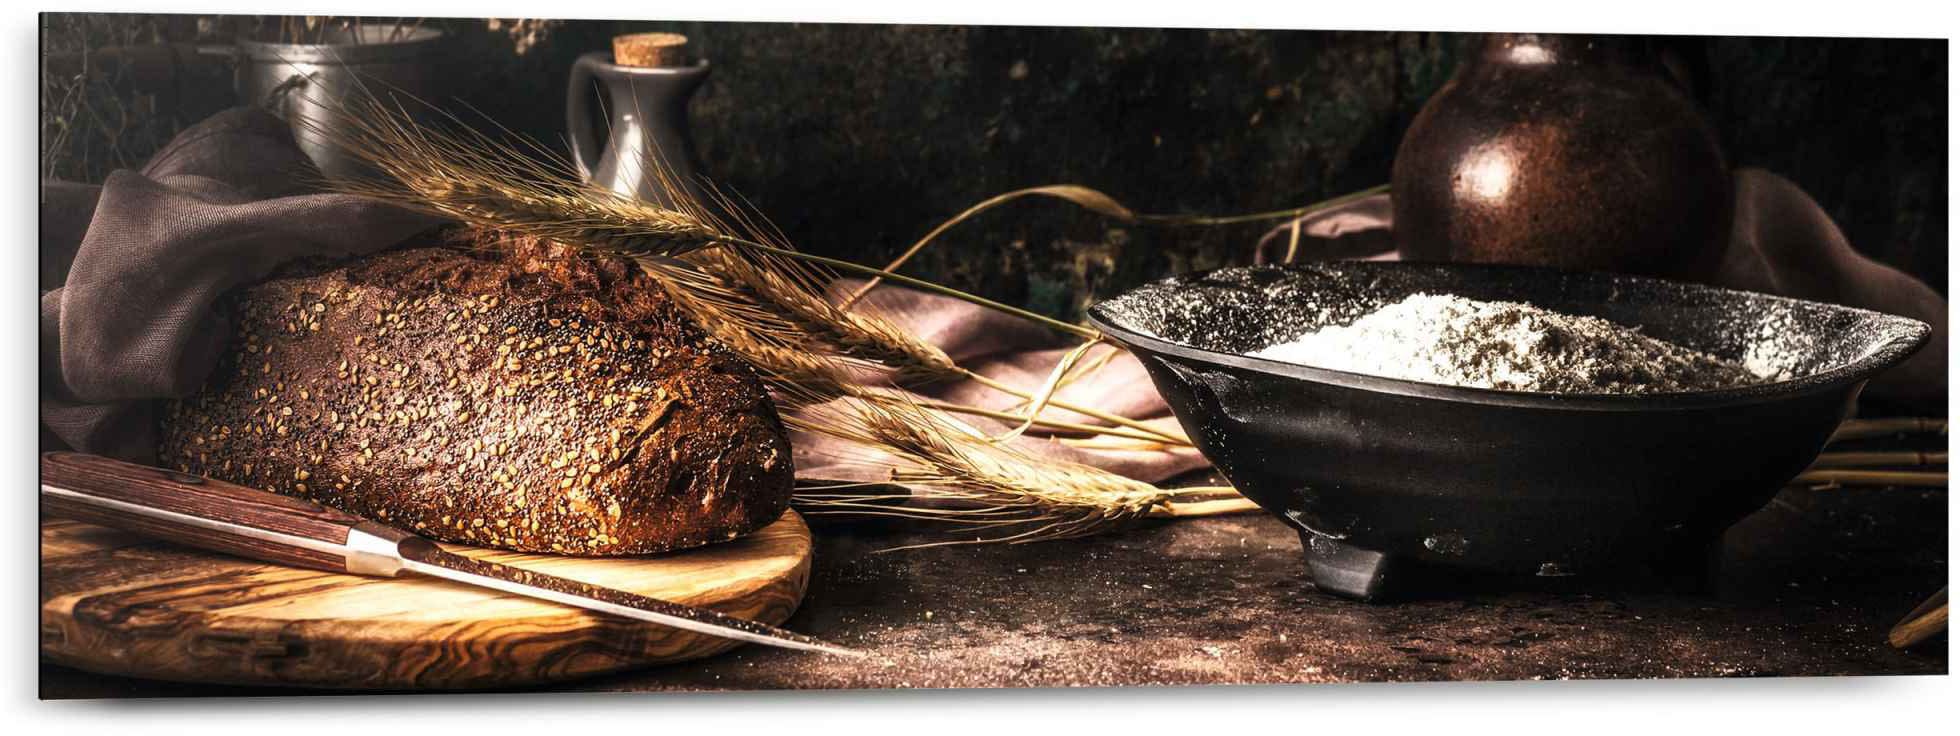 (1 »Wandbild - - Zutaten«, Essen, Reinders! bestellen St.) Getreide Brot Stilleben Wandbild Küche - bequem Bäcker